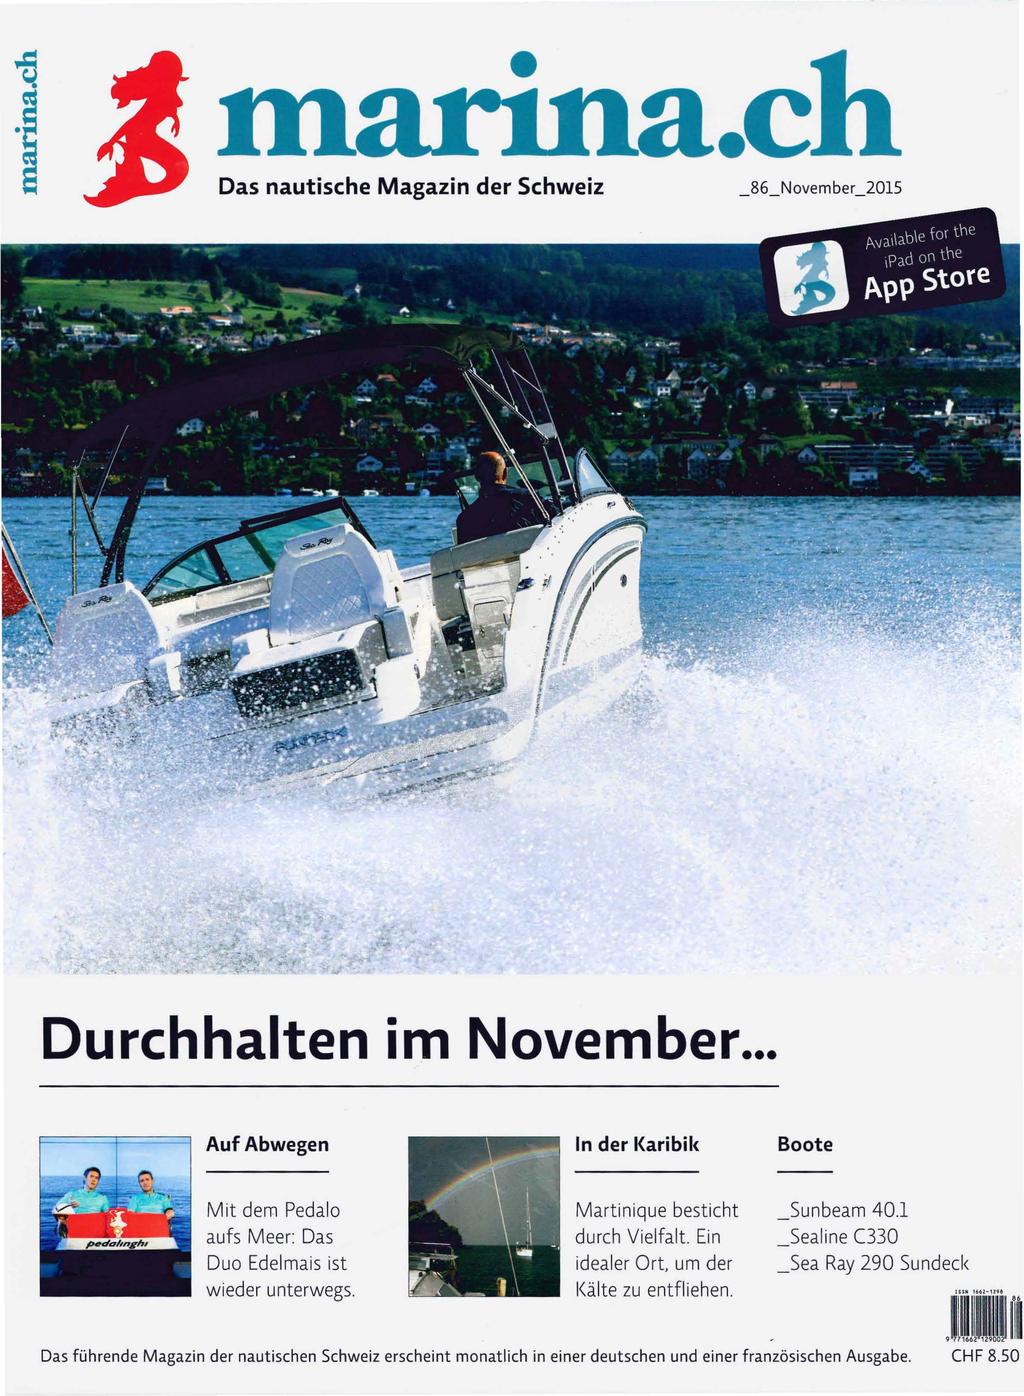 a.ch Das nautische Magazin der Schweiz 86 November_2015 Durchhalten im November... Auf Abwegen In der l{aribi l< Boote Mit dem Pedalo aufs M eer: Das Duo Edelmais ist wieder unterwegs.